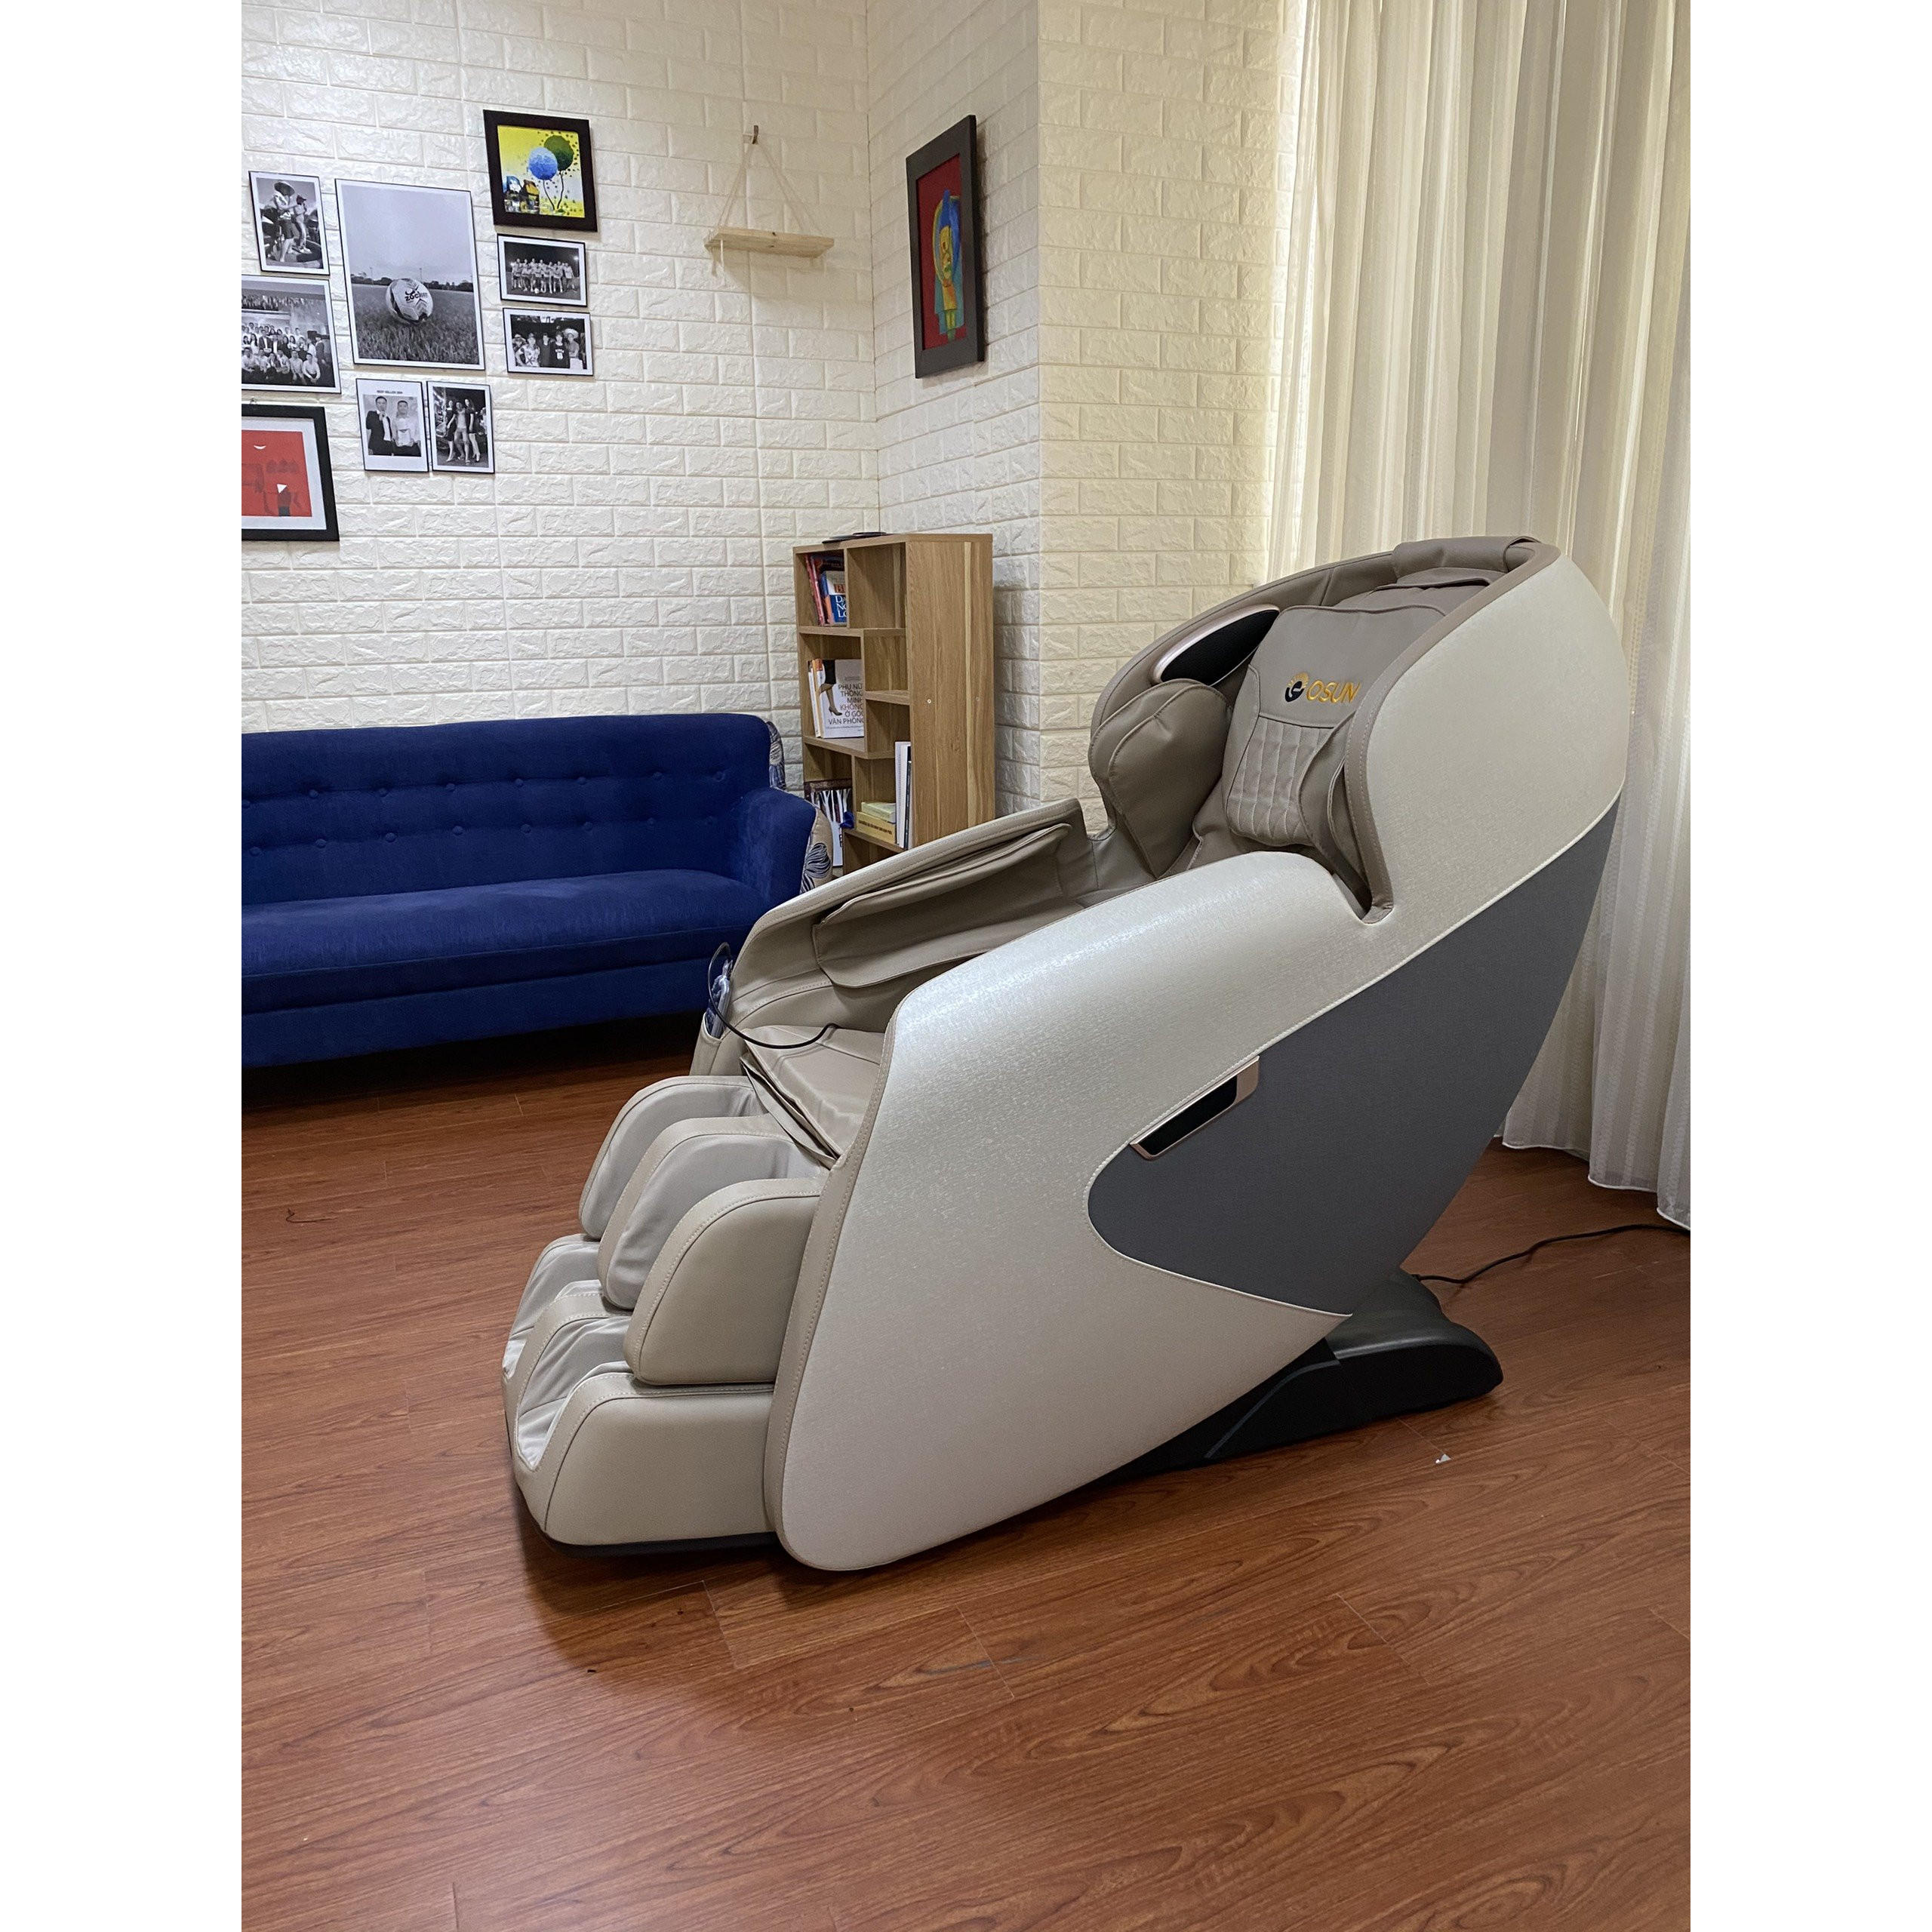 Ghế massage toàn thân OSUN SK-366 Tặng kèm Xe đạp tập + Bạt phủ ghế + Bình xịt vệ sinh ghế + Thảm kê ghế